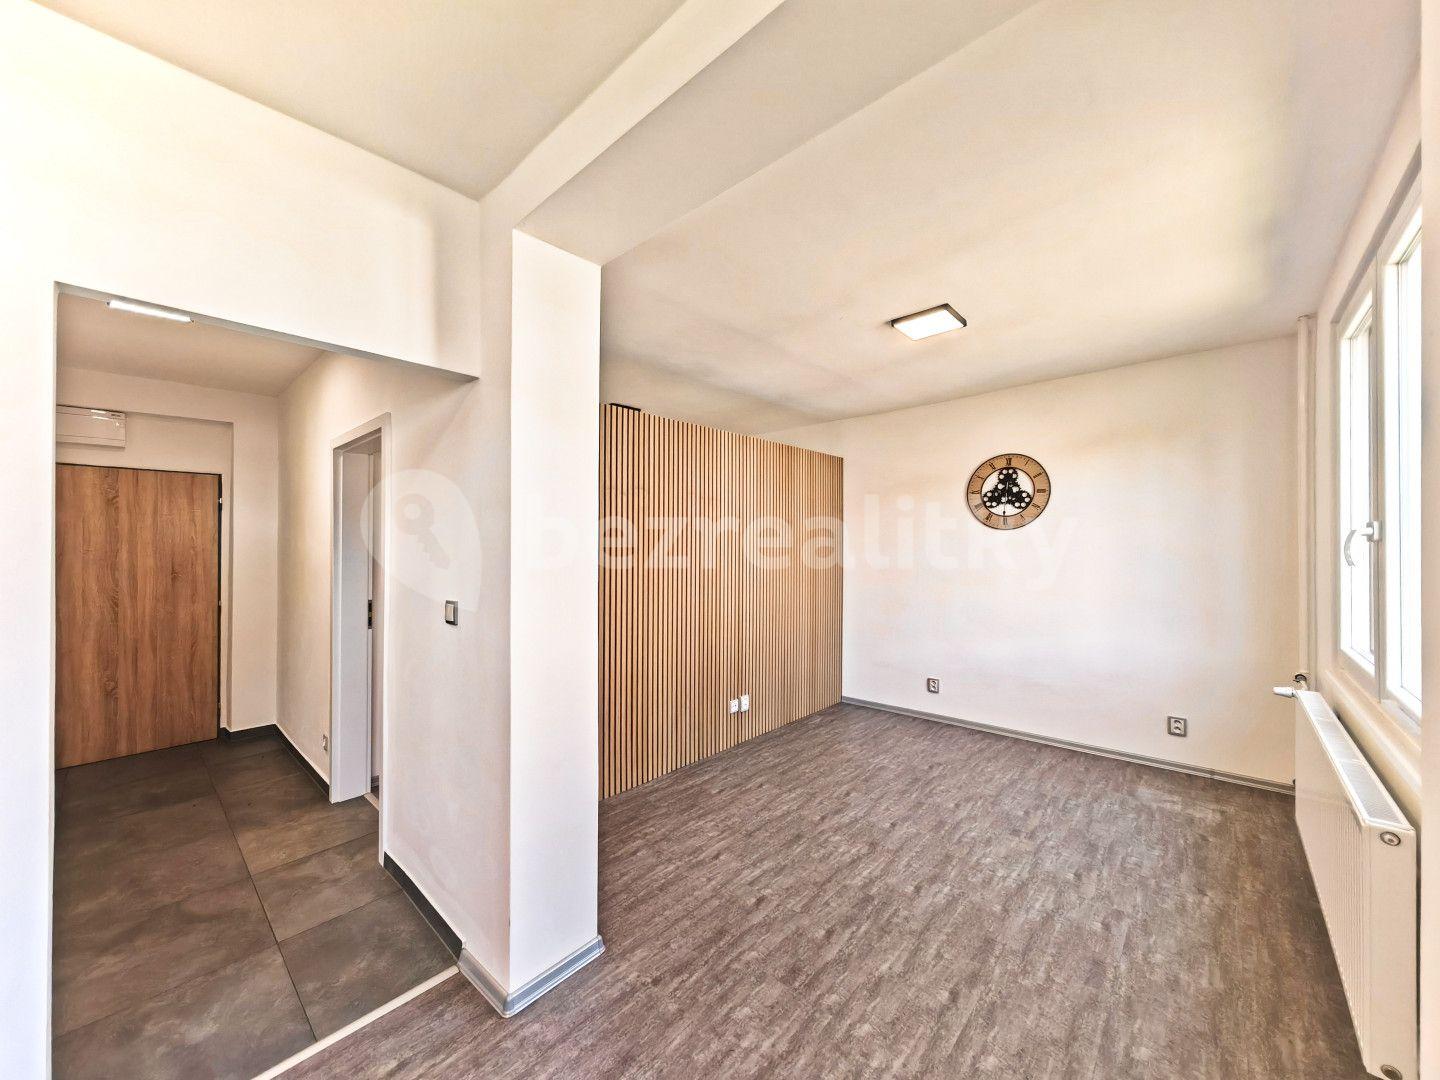 1 bedroom with open-plan kitchen flat for sale, 38 m², Deštné v Orlických horách, Královéhradecký Region